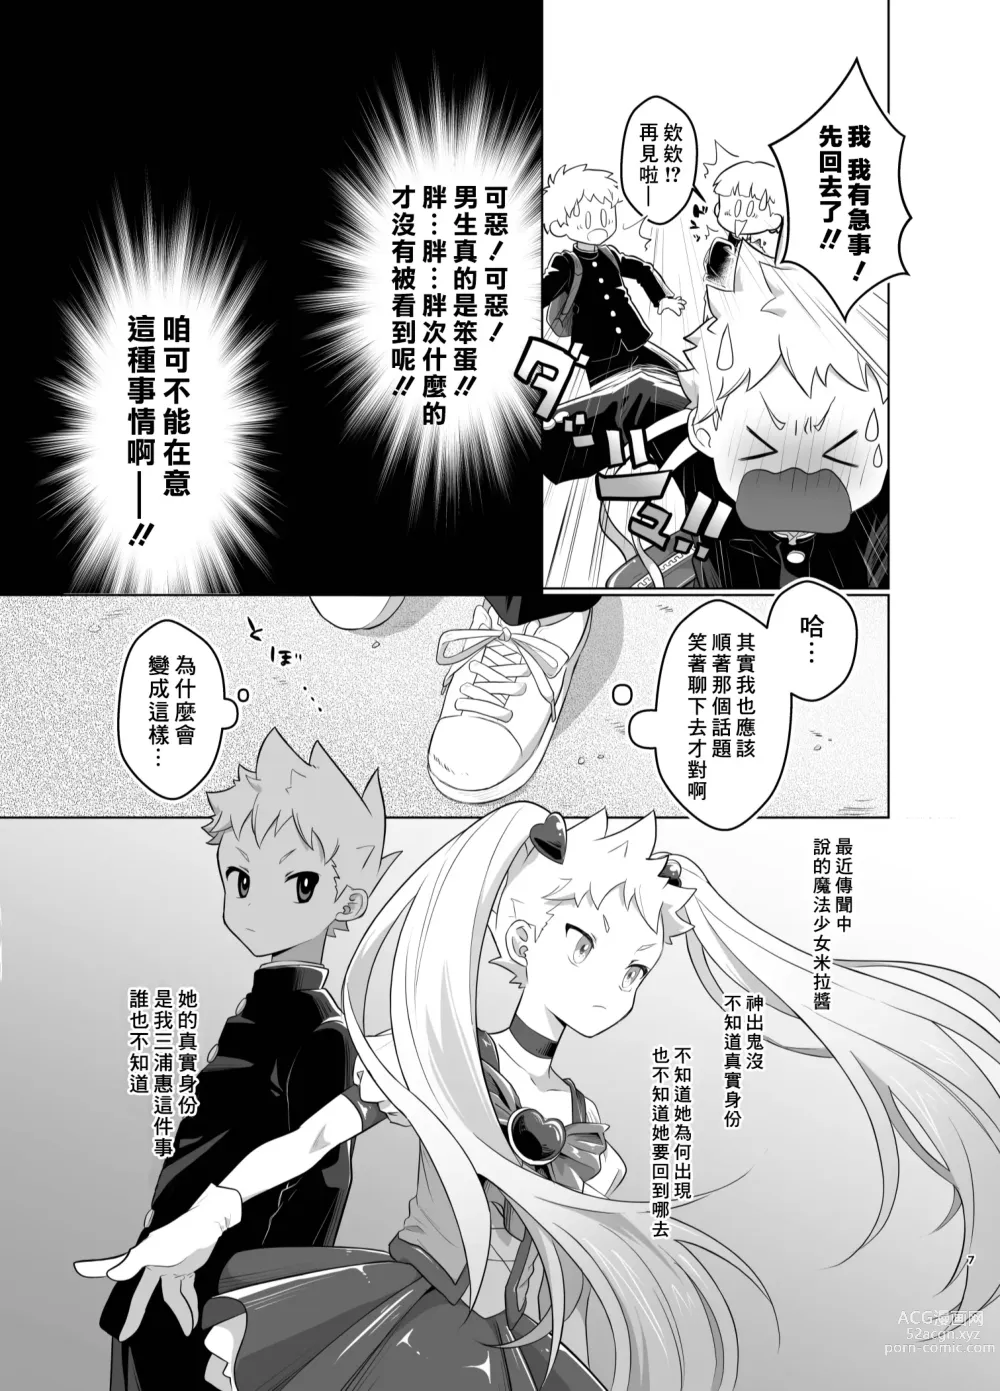 Page 6 of doujinshi Mahou Shoujo Mirakuru Mirachan丨魔法少女奇蹟米拉醬 (decensored)